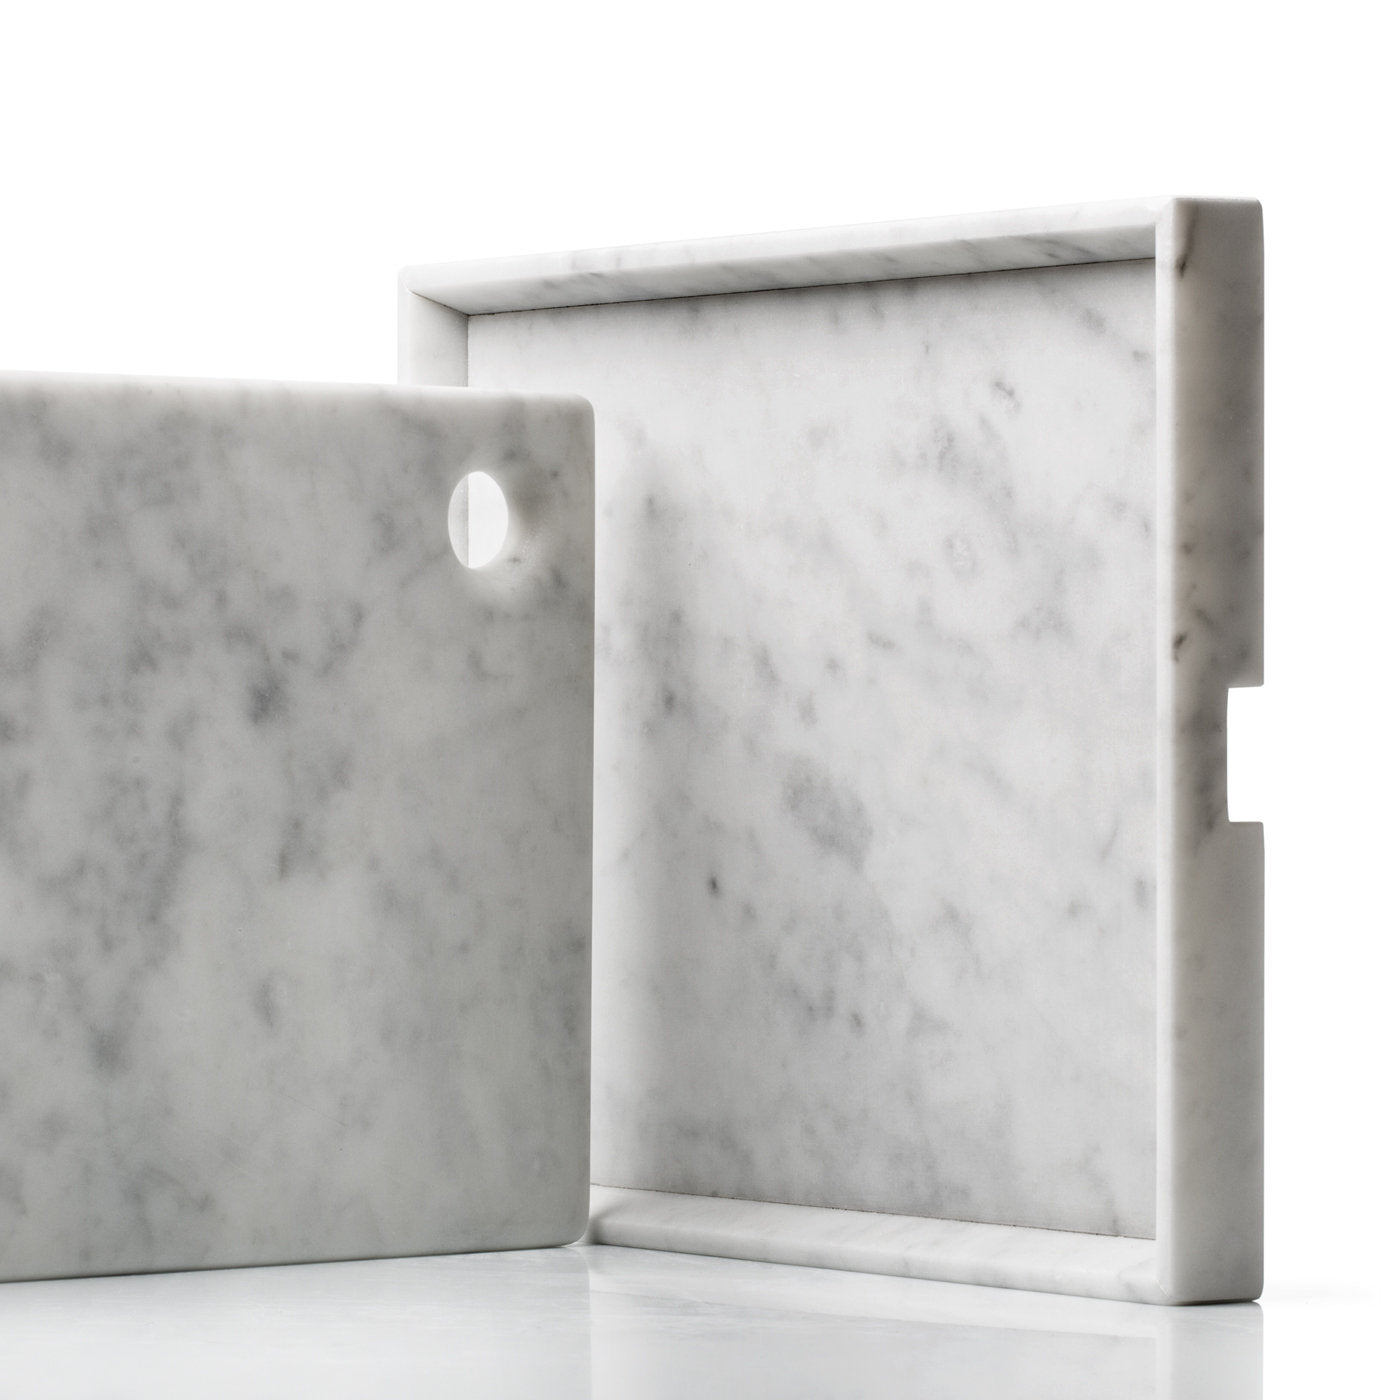 Convivio Maxi Tray in Carrara Marble - Alternative view 2